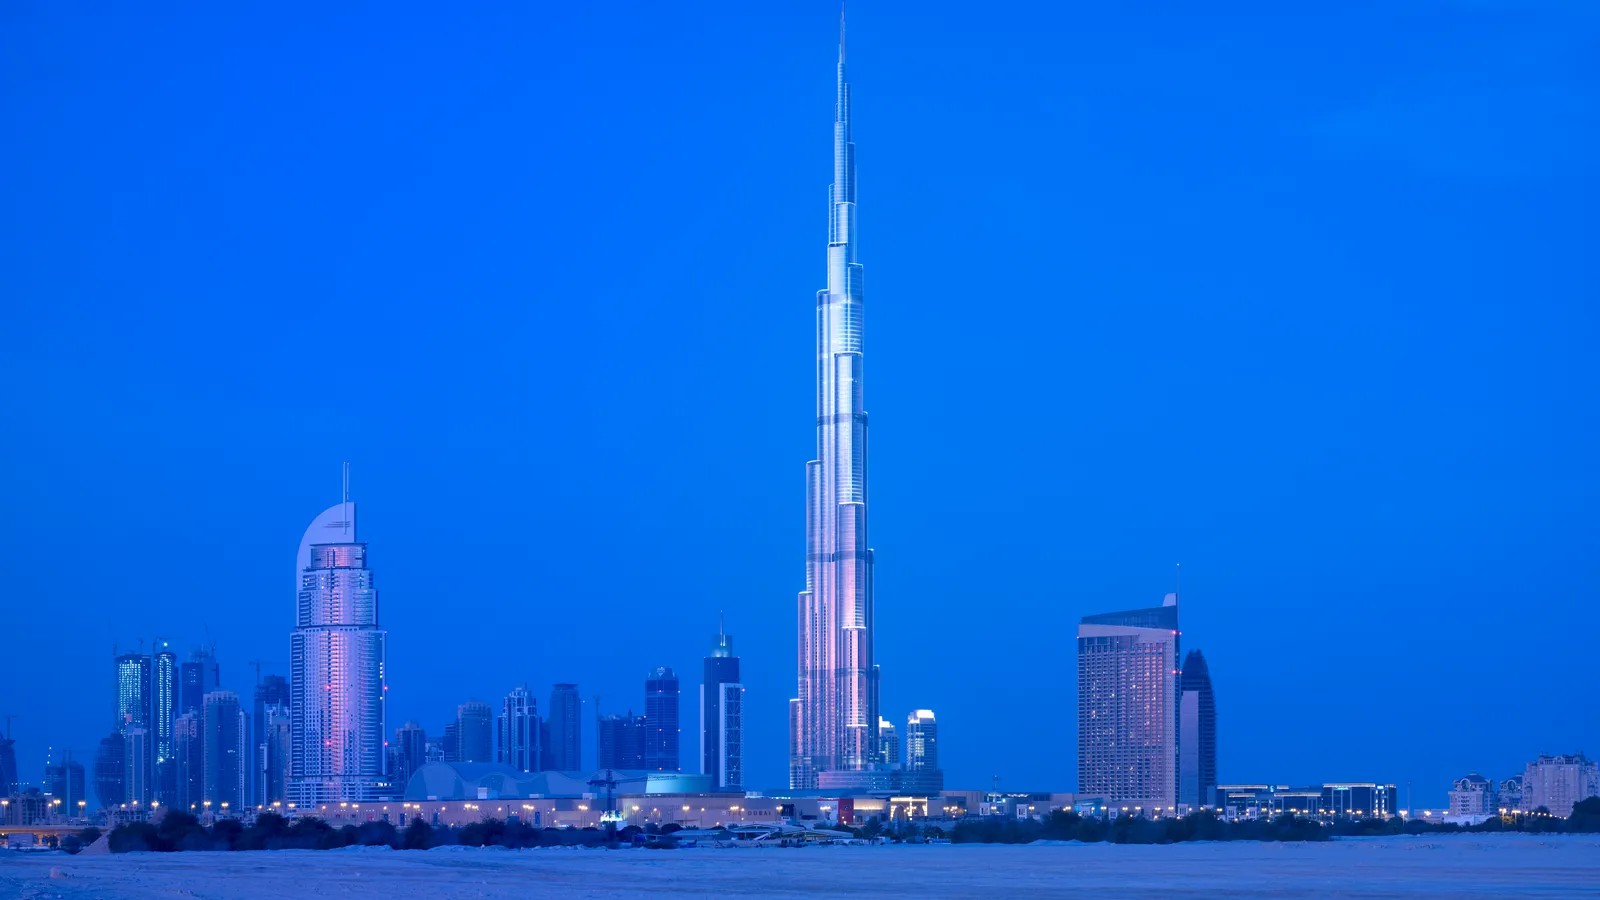 Burj Khalifa nằm ở Khu thương mại Dubai ở Các Tiểu vương quốc Ả Rập Thống nhất, gần Đường đi bộ lát đá Đài phun nước Dubai. Ngày nay, tòa nhà được bao quanh bởi các văn phòng, cửa hàng và nhà hàng khác, trong đó có Trung tâm mua sắm Dubai, nơi có nhiều nhà bán lẻ thiết kế như Hermés, Saint Laurant, Cartier và Balenciaga, cùng các điểm đến đáng chú ý khác như Burj Al Arab và Palm Jumeirah gần đó. Mặc dù thành phố hiện nay nổi tiếng với lối sống hào nhoáng và giàu có, nhưng khi dự án mới bắt đầu, khu vực này chỉ là một mảnh đất với vài tòa nhà nằm rải rác đây đó.